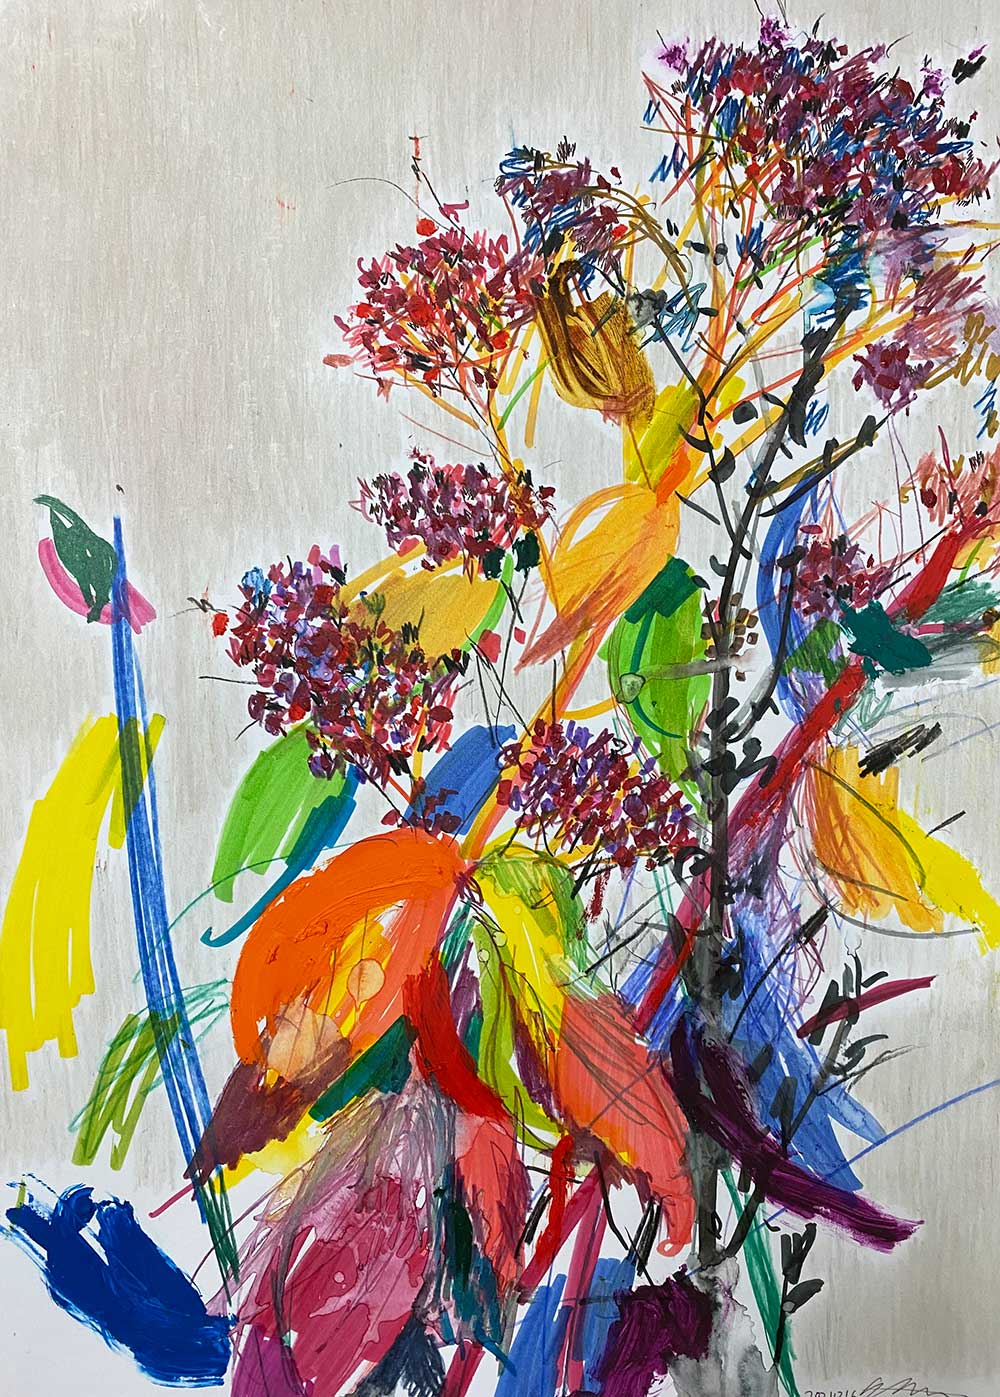 노정연_Garden stonecrop Ⅰ (꿩의 비름Ⅰ), acrylic, marker and oil stick on paper, 42 x 29.7 cm, 2021